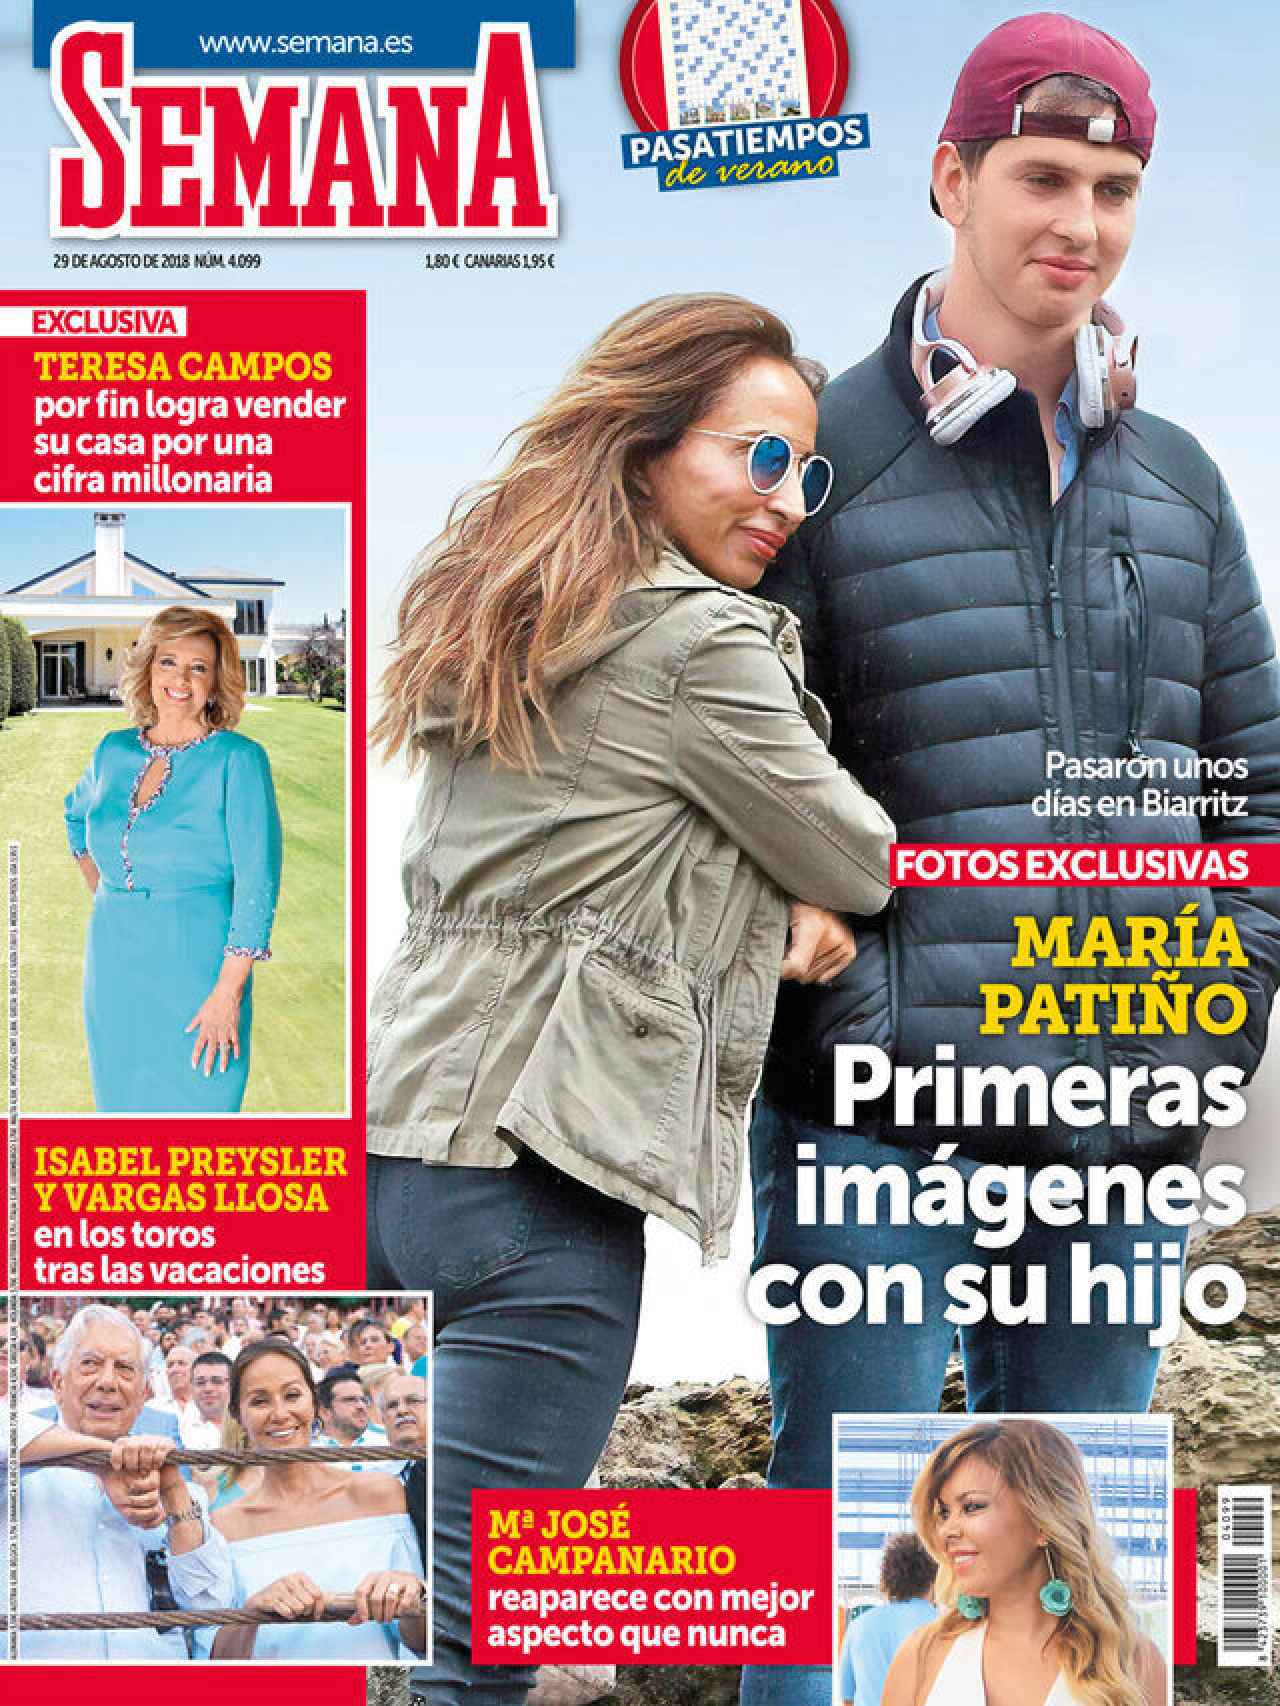 Julio fue 'presentando' públicamente en 2018 en una portada de la revista 'Semana'.